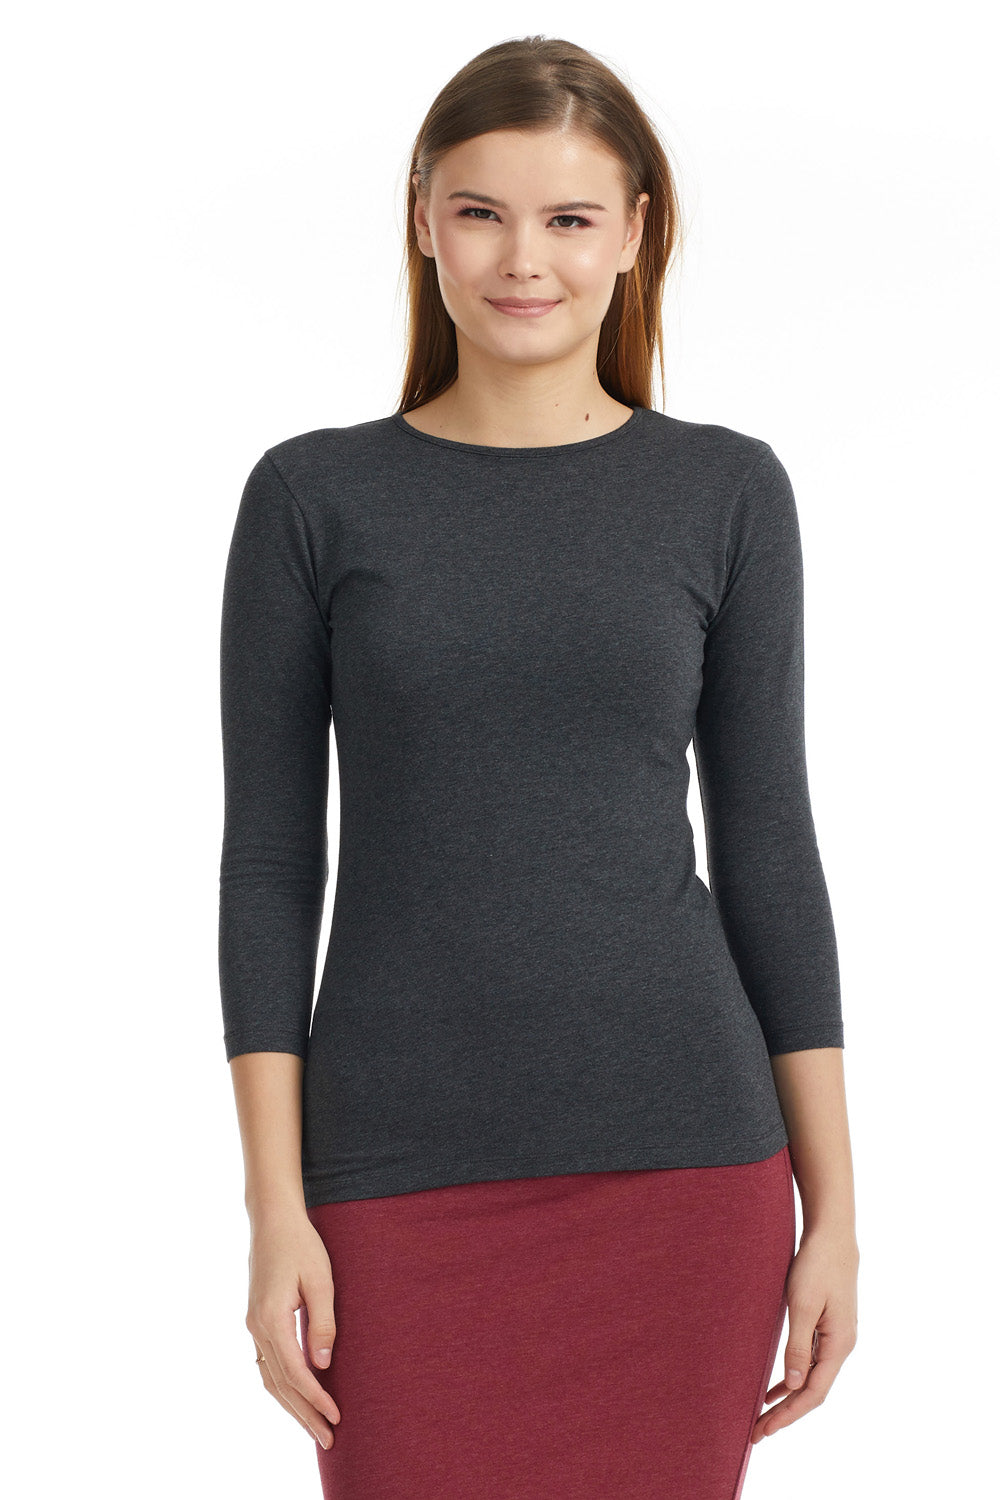 Esteez 3/4 Cotton Spandex SNUG FIT Layering Shirt for WOMEN